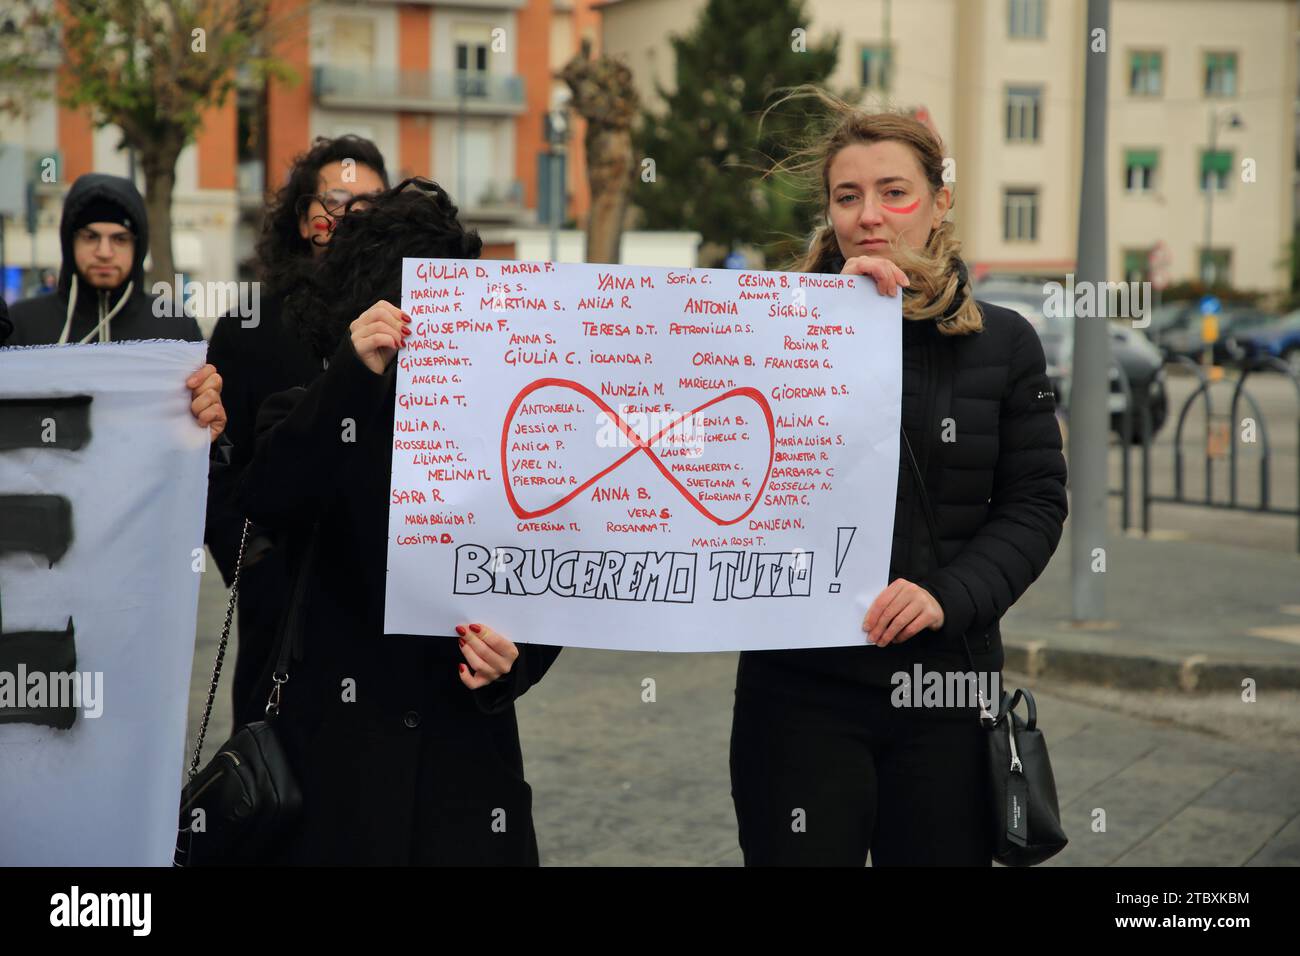 Le donne marciano in segno di protesta contro gli omicidi di donne da parte di mariti e fiduciari nella giornata internazionale contro la violenza contro le donne. Foto Stock